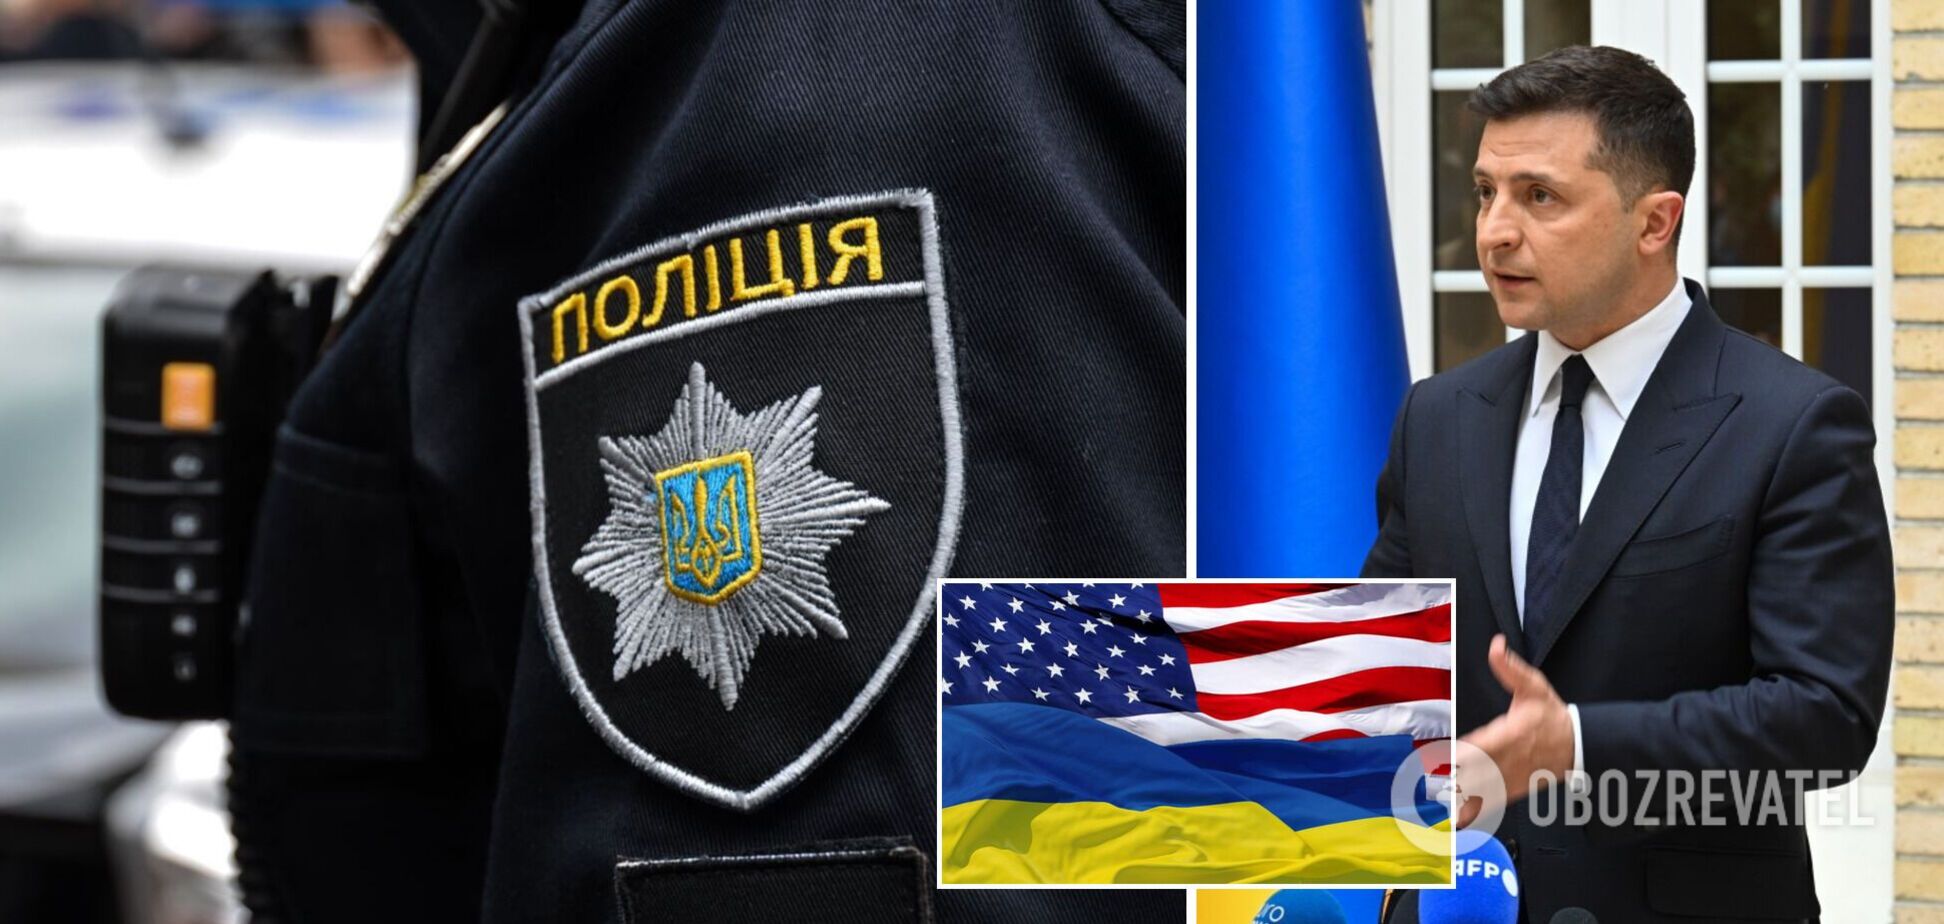 Новости Украины: Зеленский отправится с визитом в США, а в Запорожье раскрыли убийство профессора